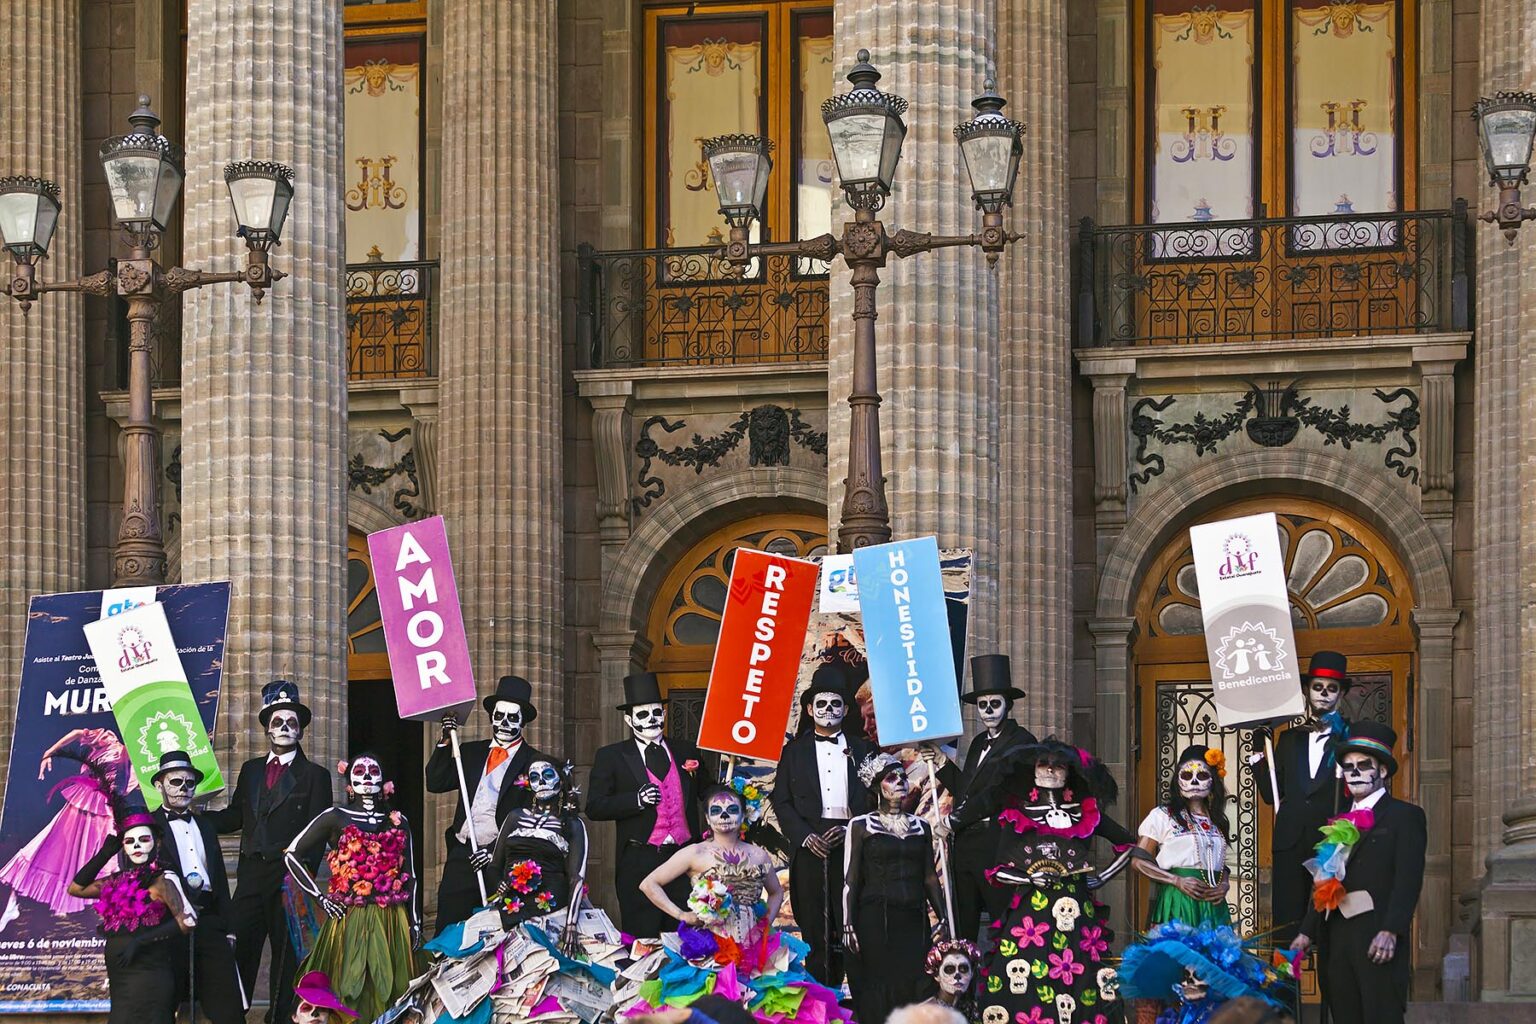 LA CALAVERA CATRINAS or Elegant Skulls, are the icons of the DAY OF THE DEAD - GUANAJUATO, MEXICO